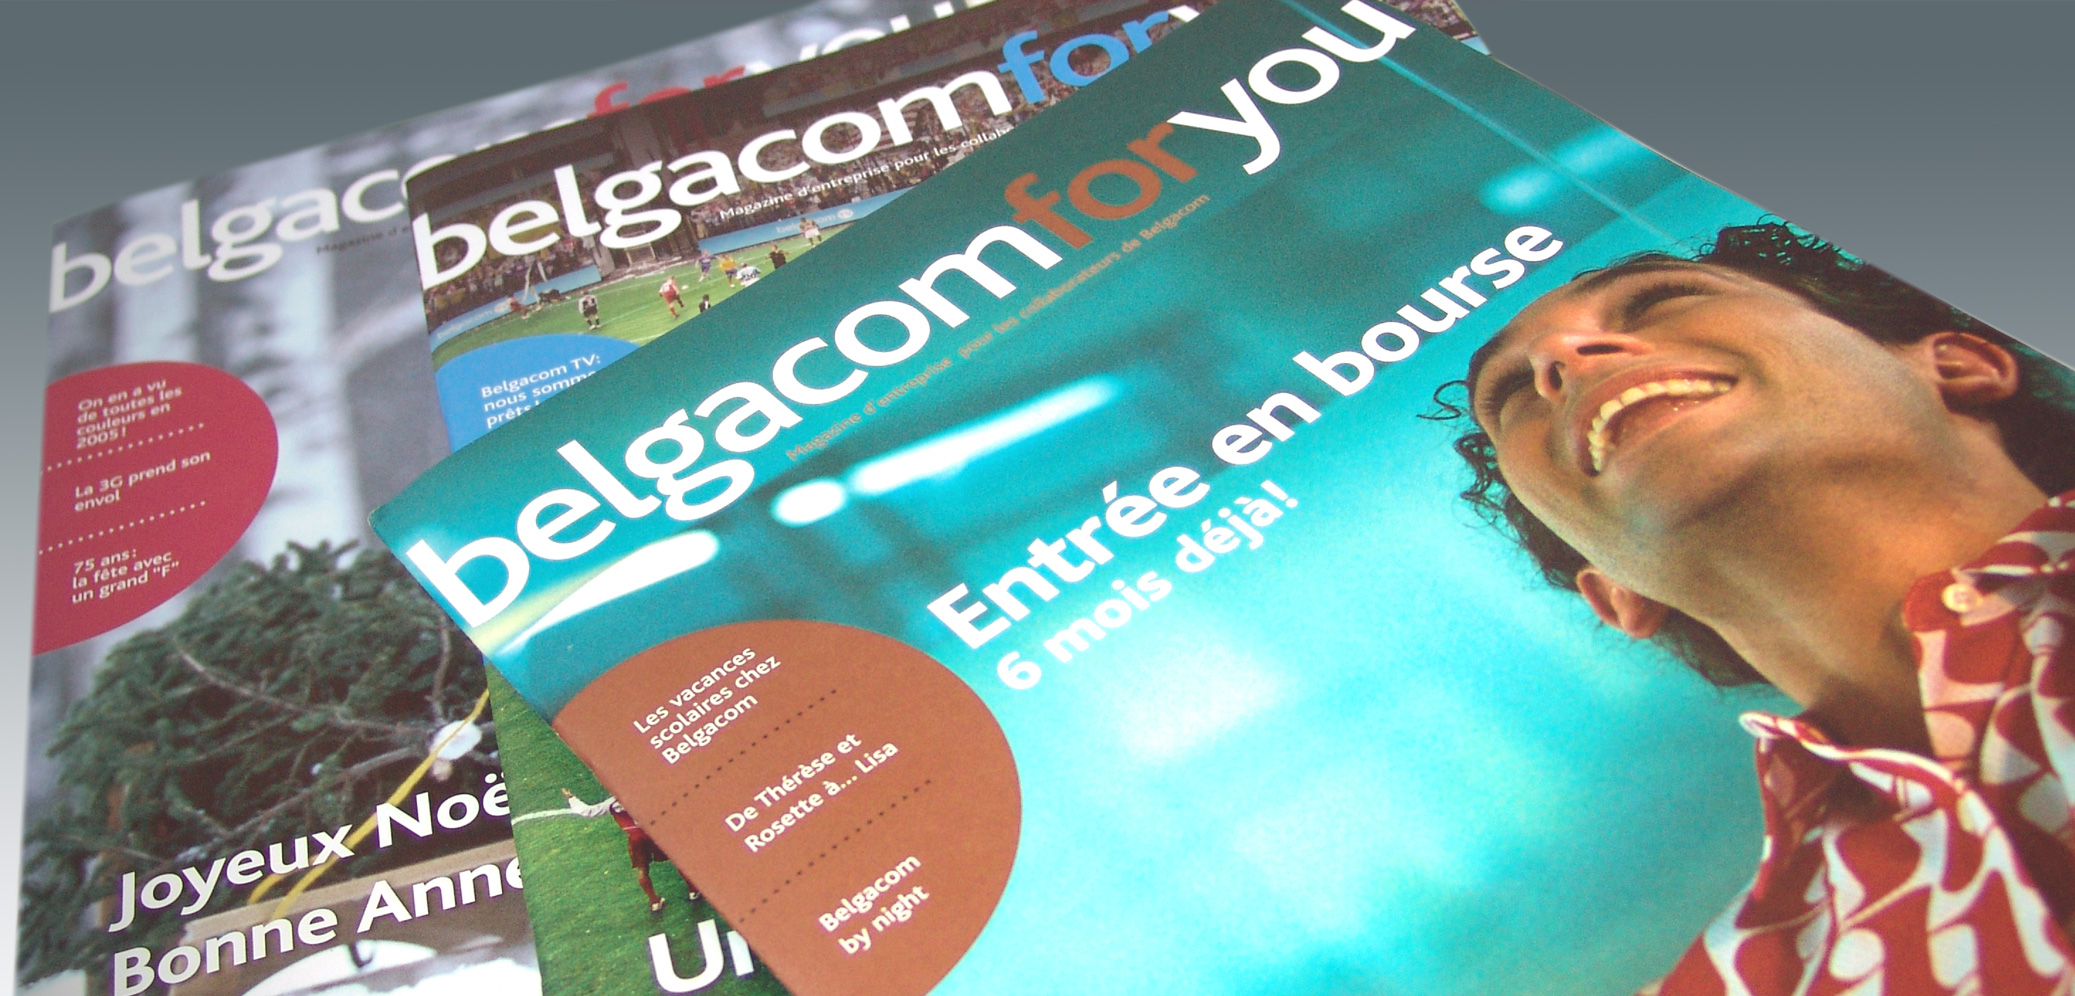 Belgacom - Internal Newsletter